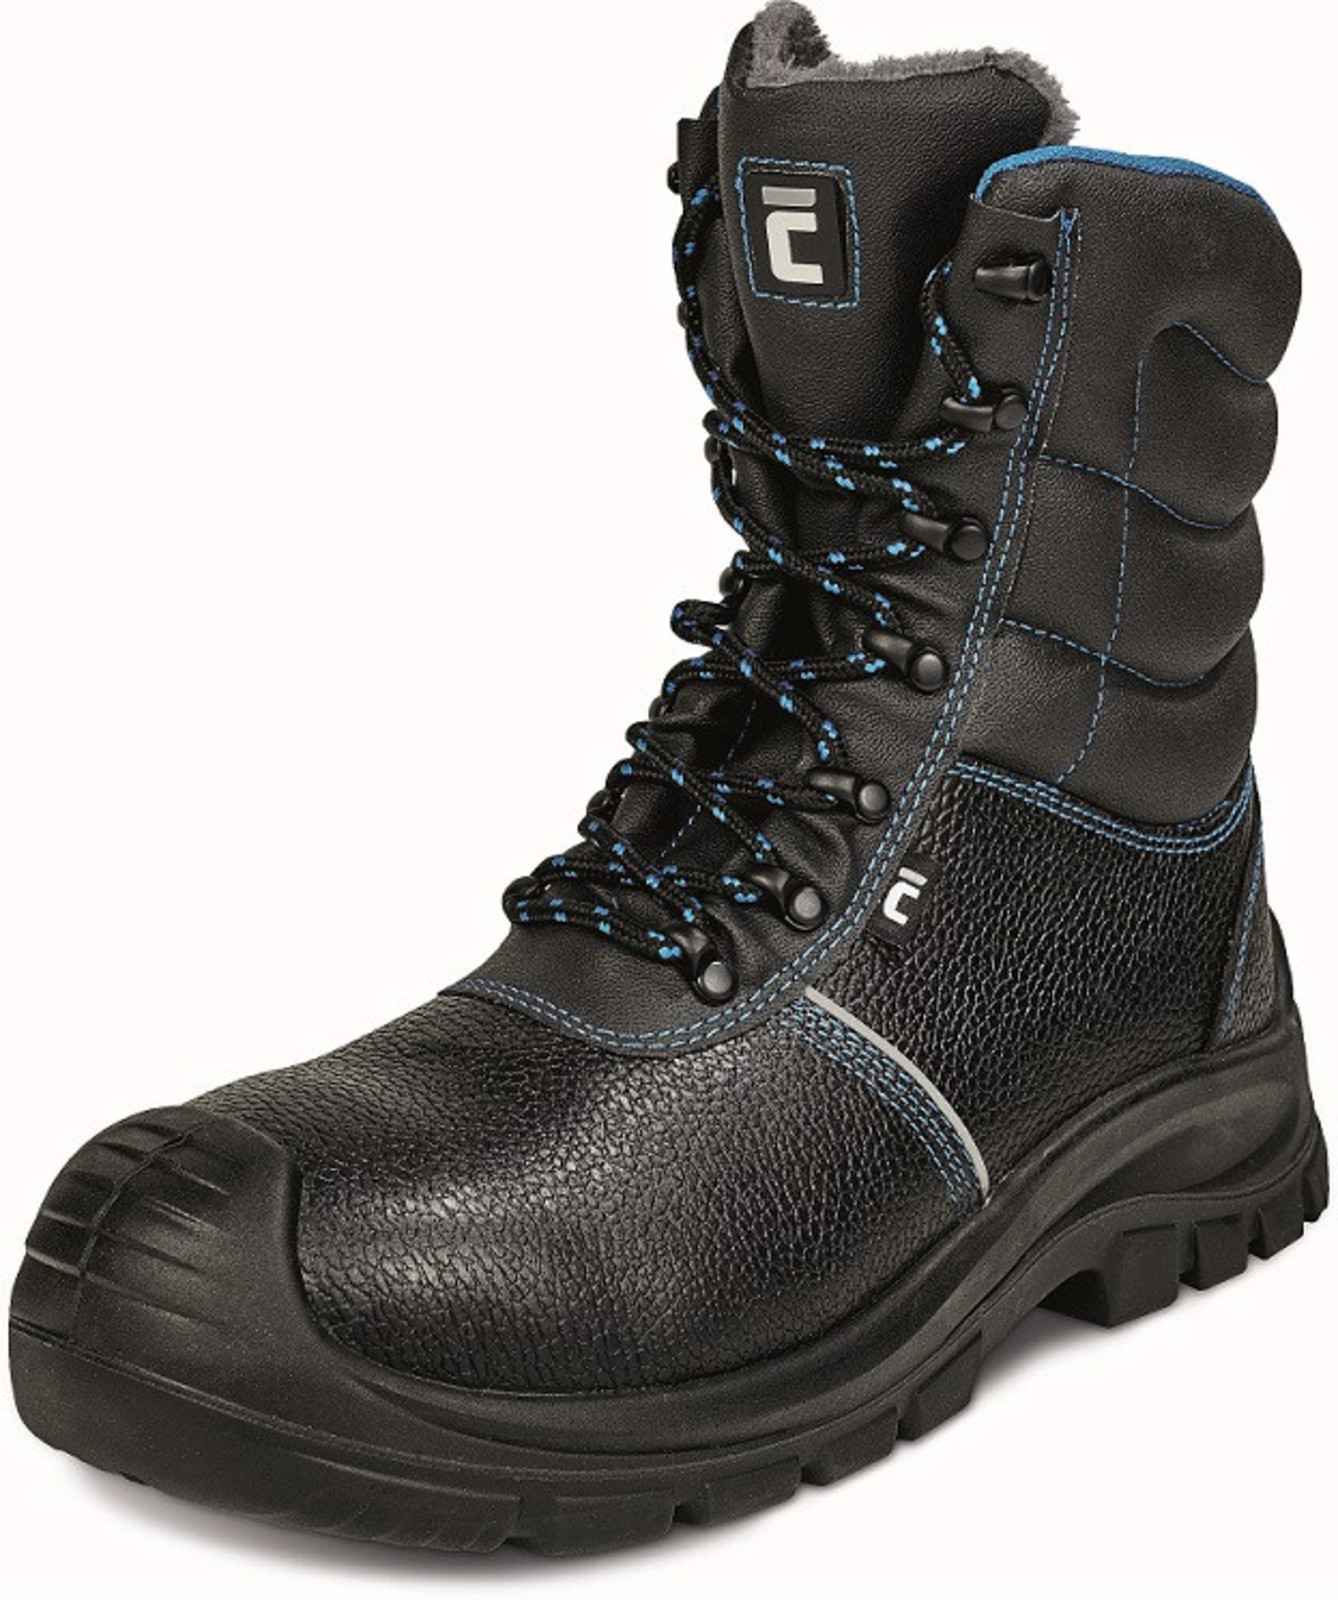 Zimná vysoká bezpečnostná obuv Raven XT S3 - veľkosť: 49, farba: čierna